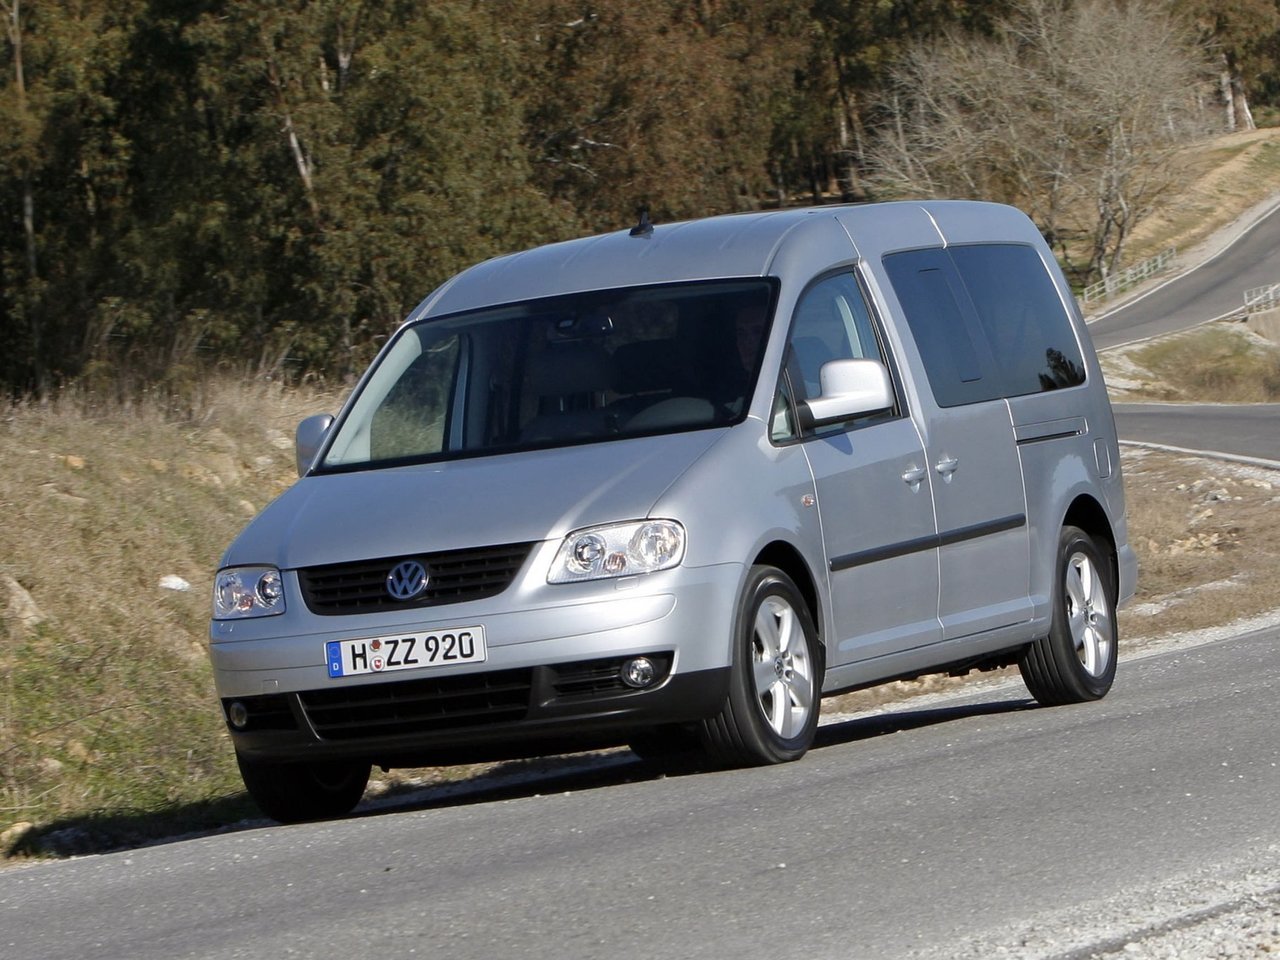 Расход газа трёх комплектаций компактвэна Life Maxi Volkswagen Caddy. Разница стоимости заправки газом и бензином. Автономный пробег до и после установки ГБО.